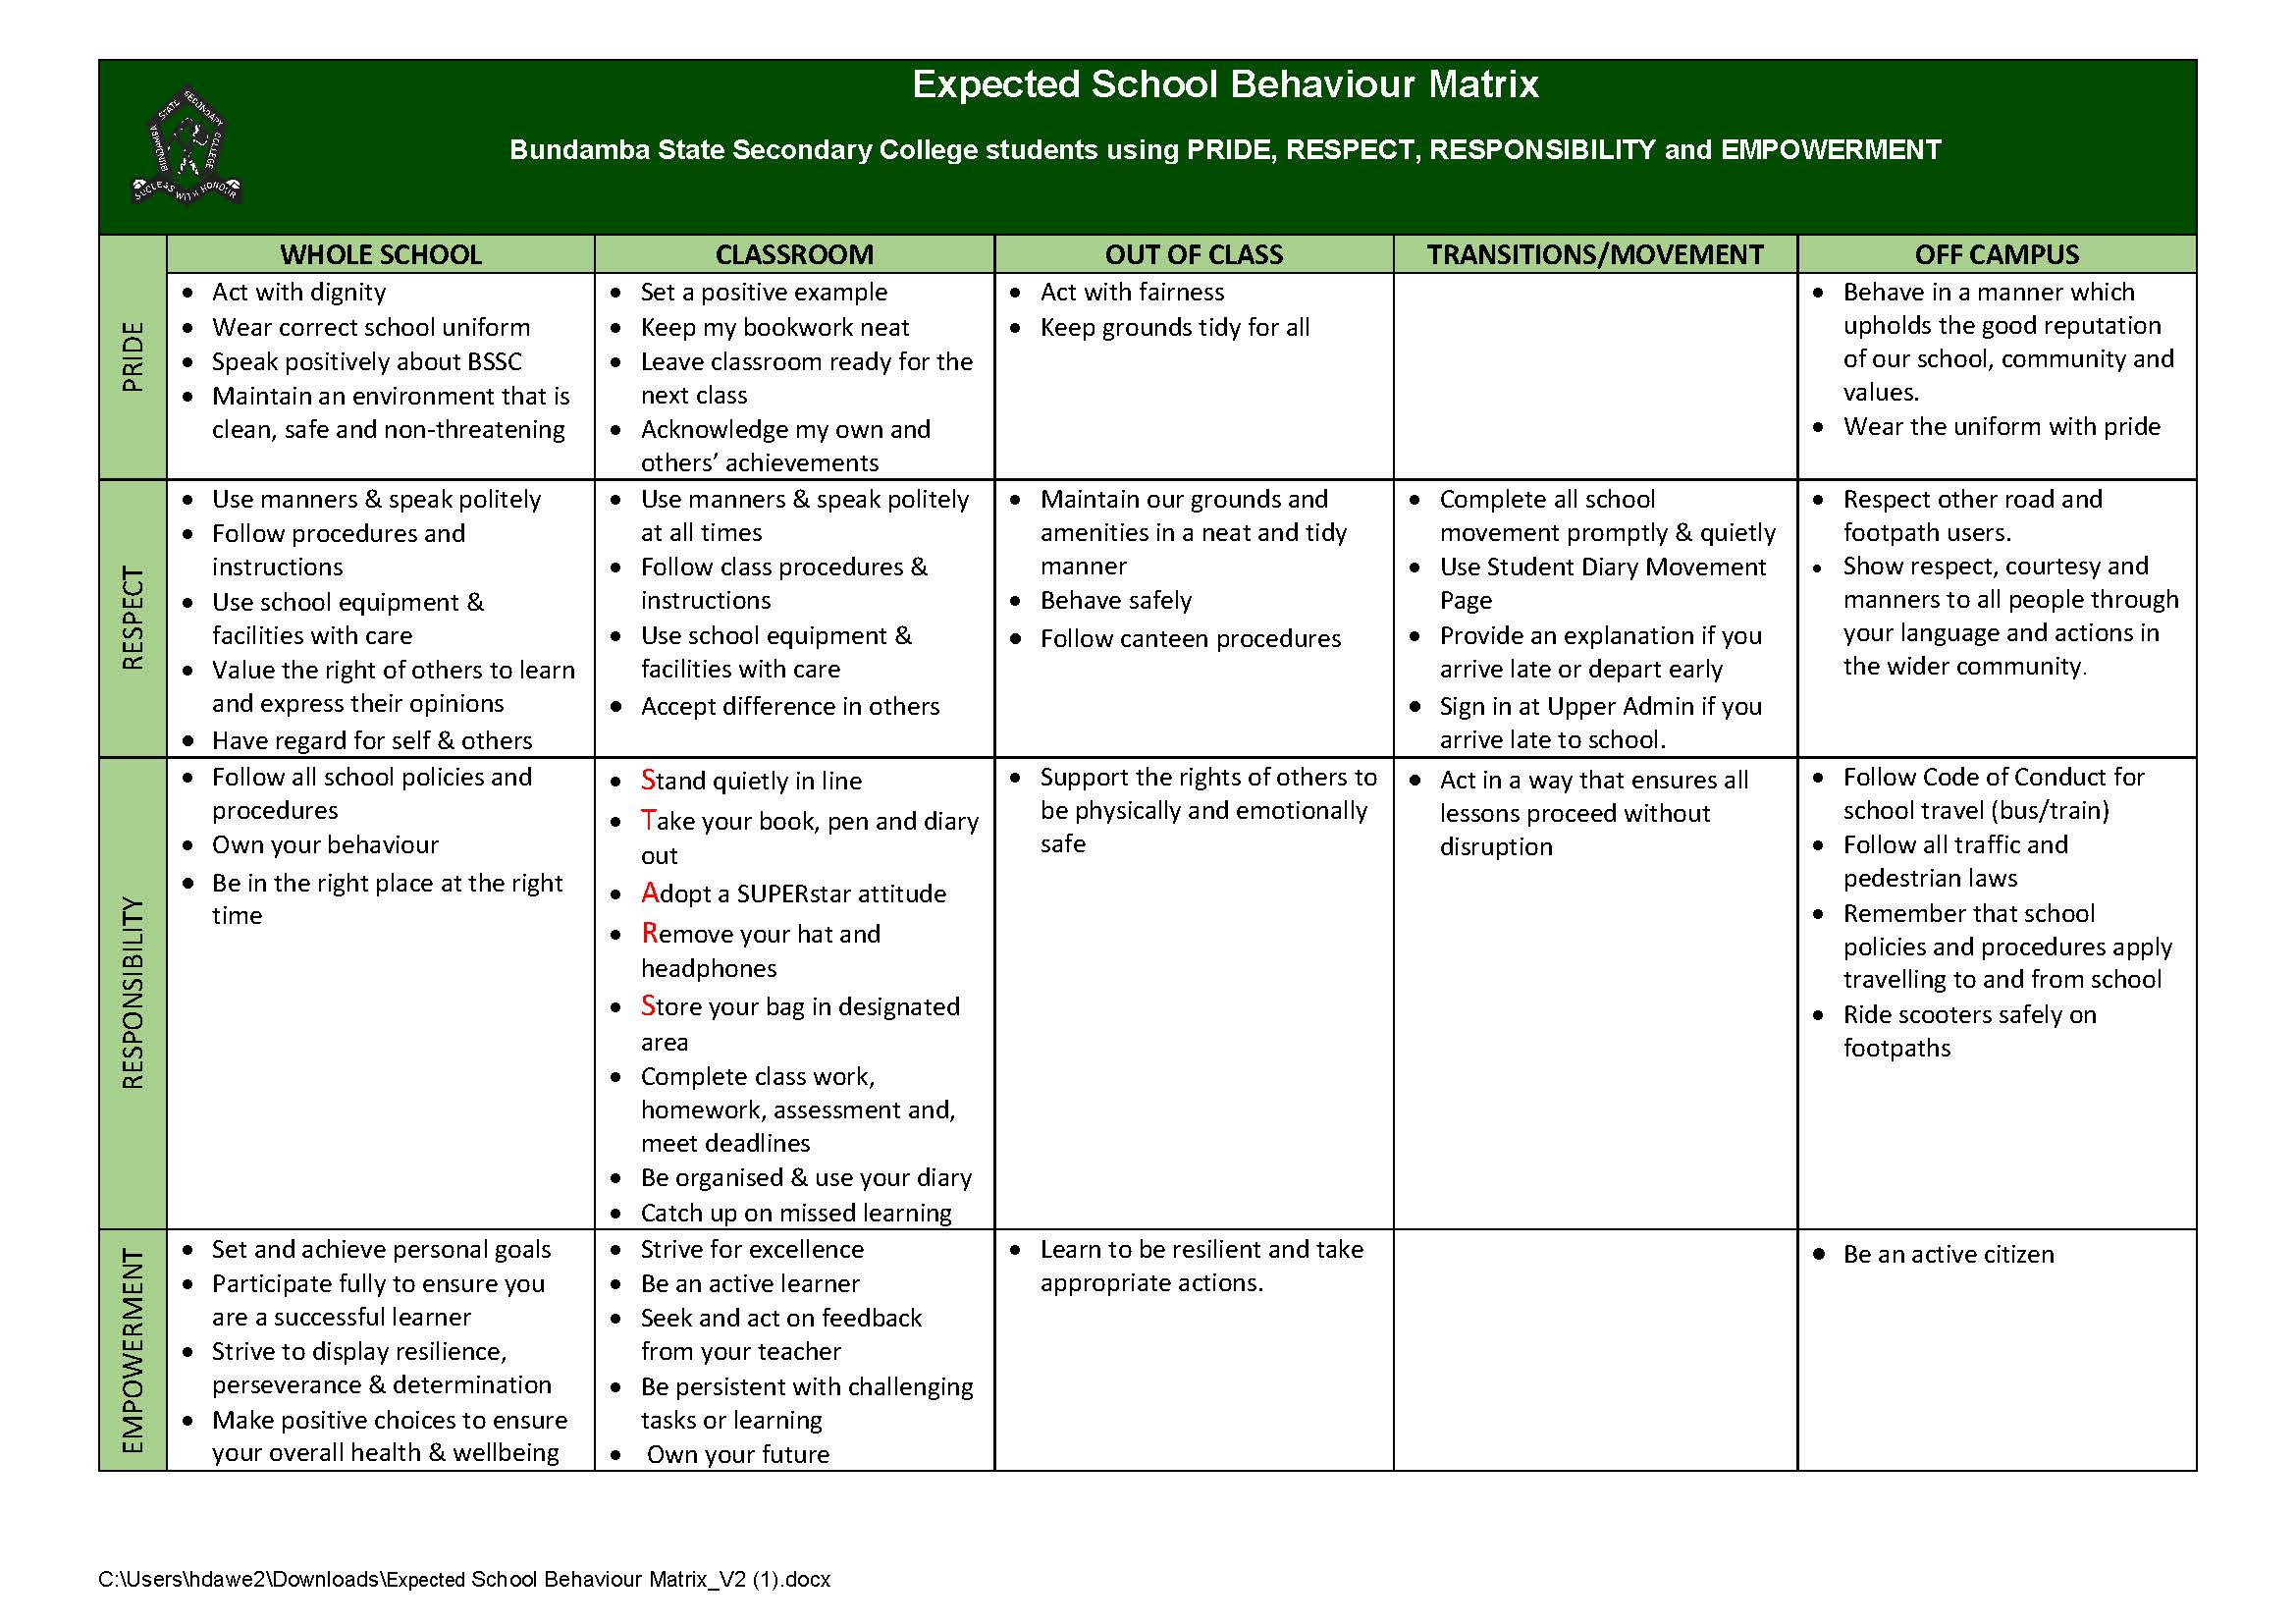 Expected School Behaviour Matrix V2 (1).jpg